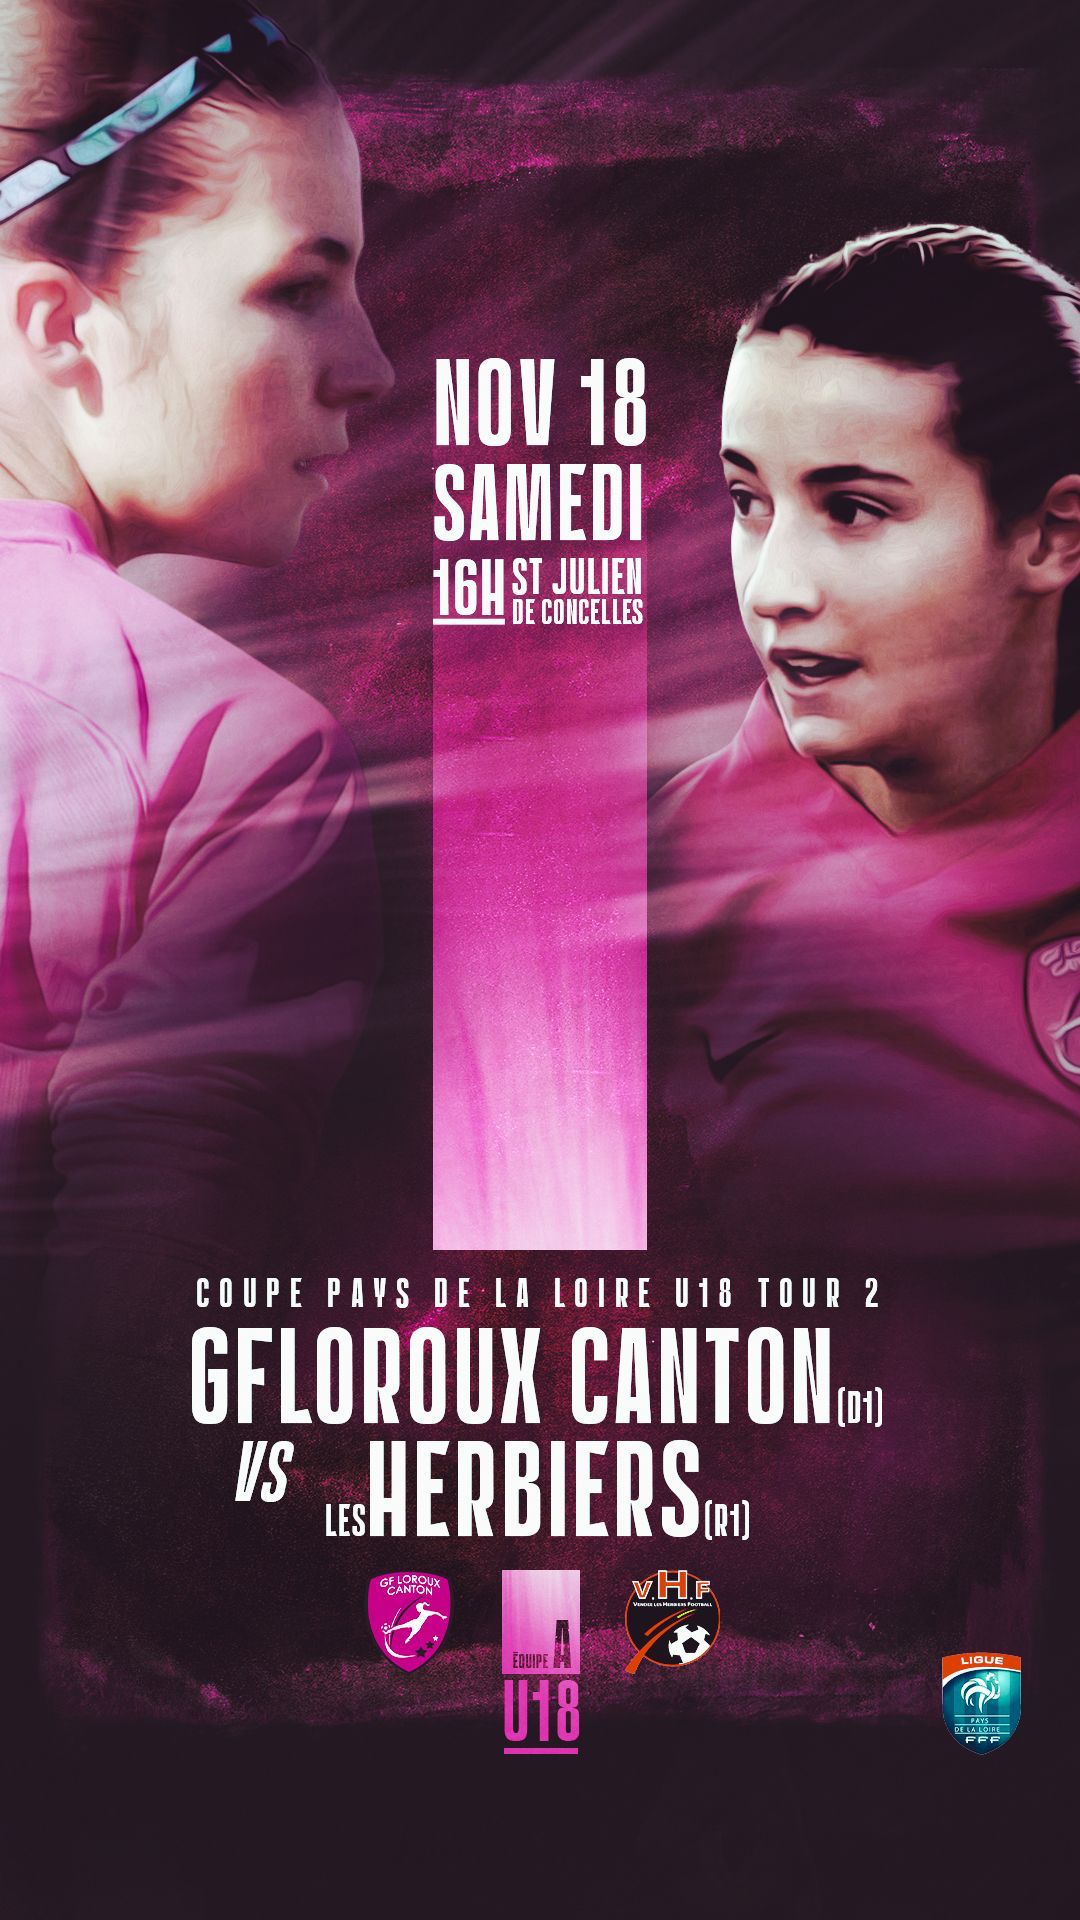 Affiche du match de Coupe des Pays de la Loire entre les Herbiers VF et le GF Loroux Canton